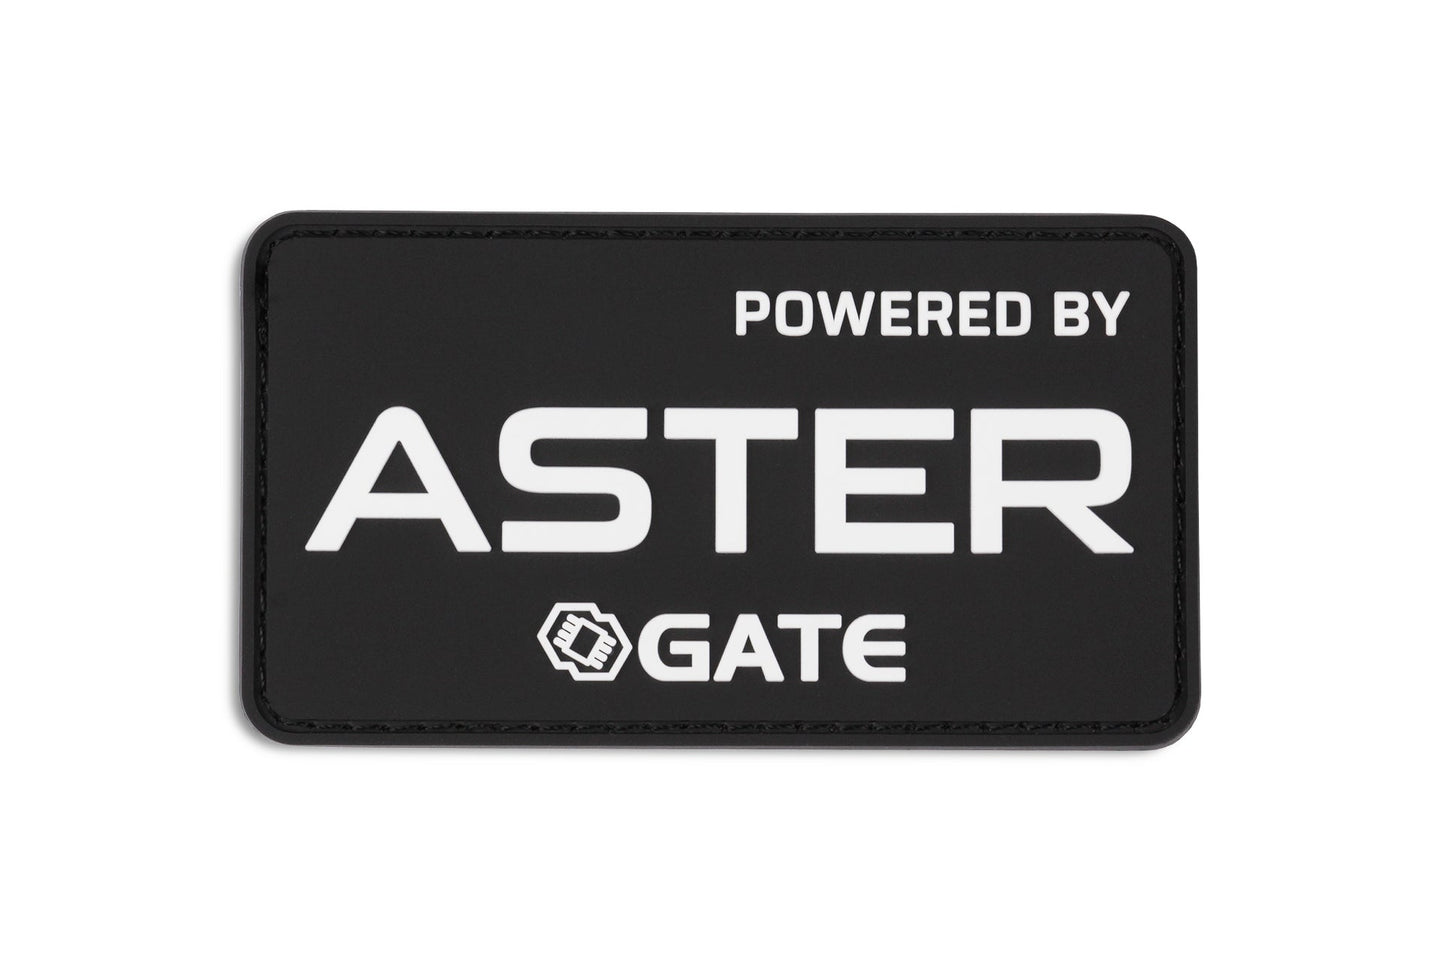 TITAN/ASTER/GATE Patch